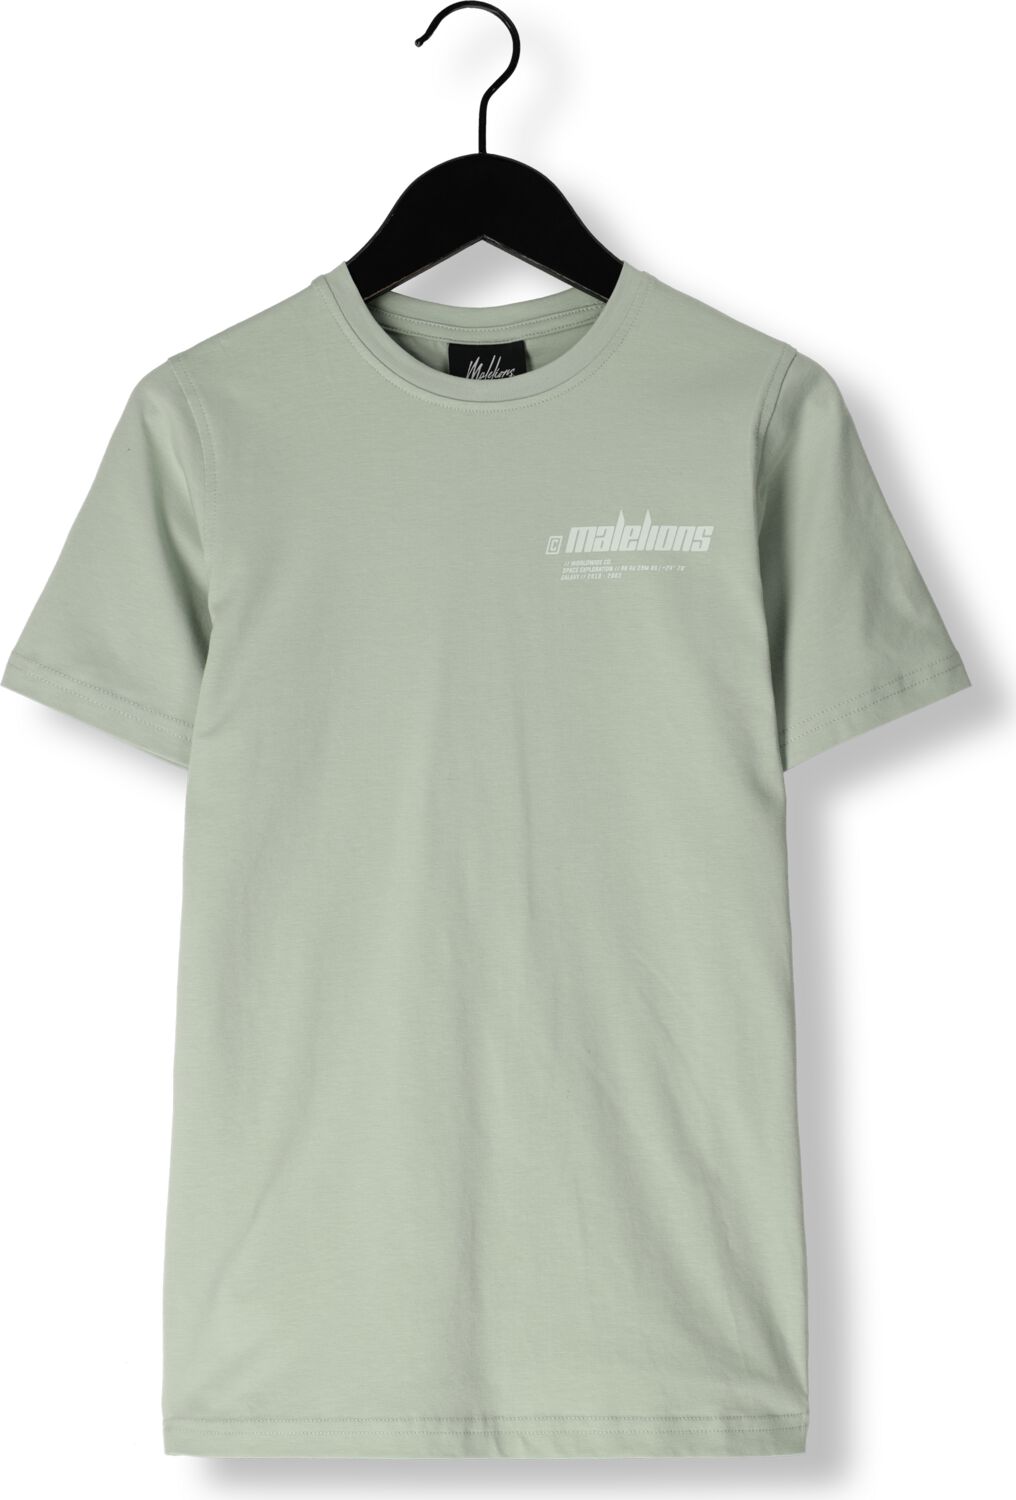 Malelions T-shirt Worldwide met logo grijs Jongens Stretchkatoen Ronde hals 176